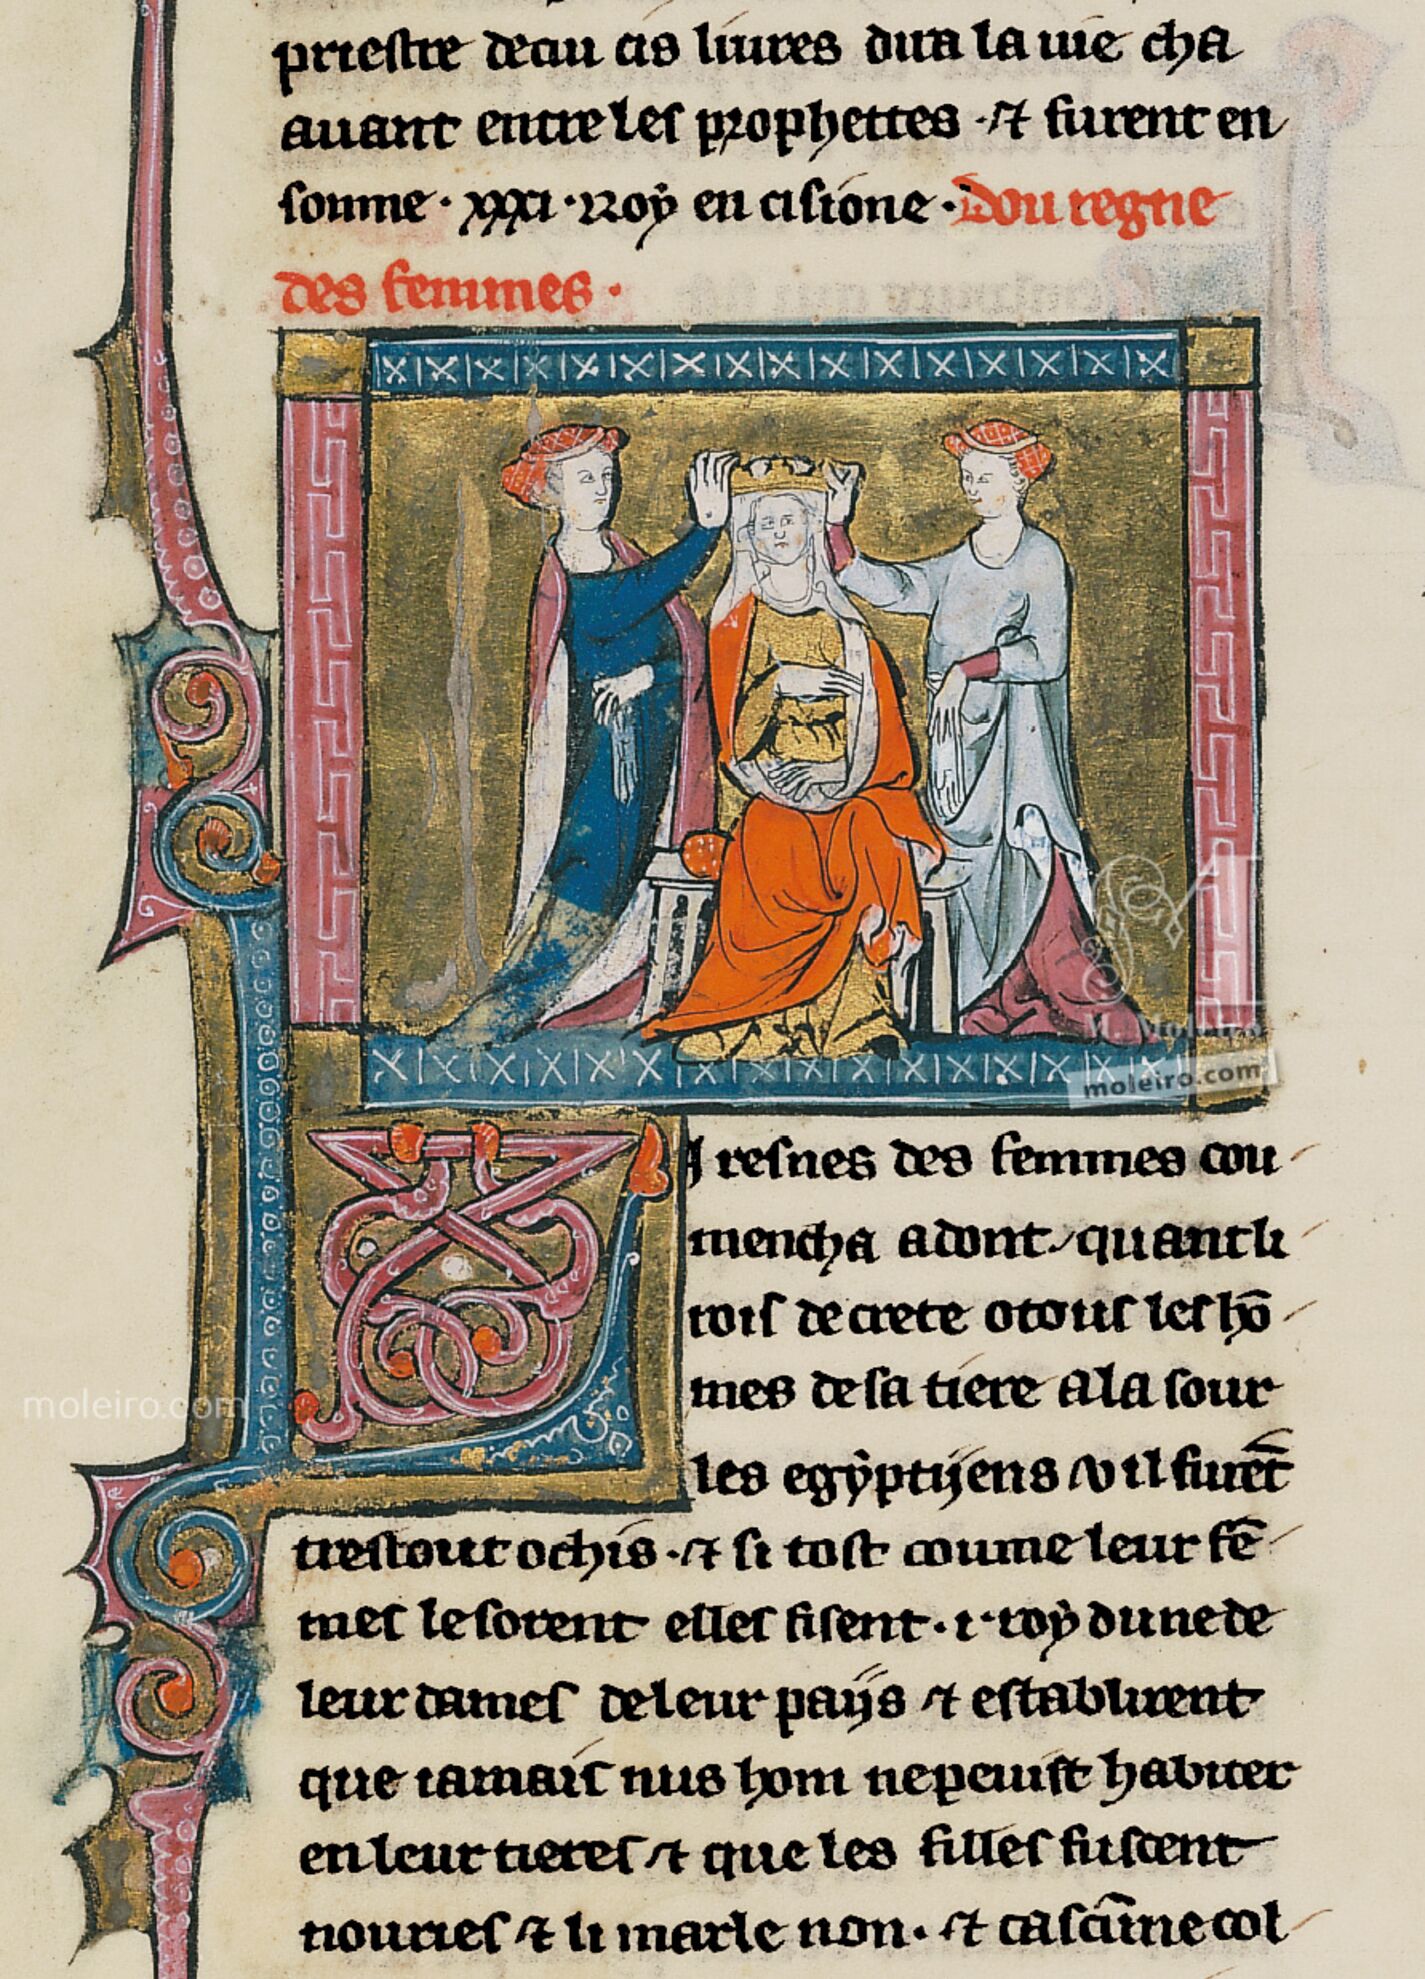 f. 13v, Pentesila, reina de las amazonas, con sus damas de compañía